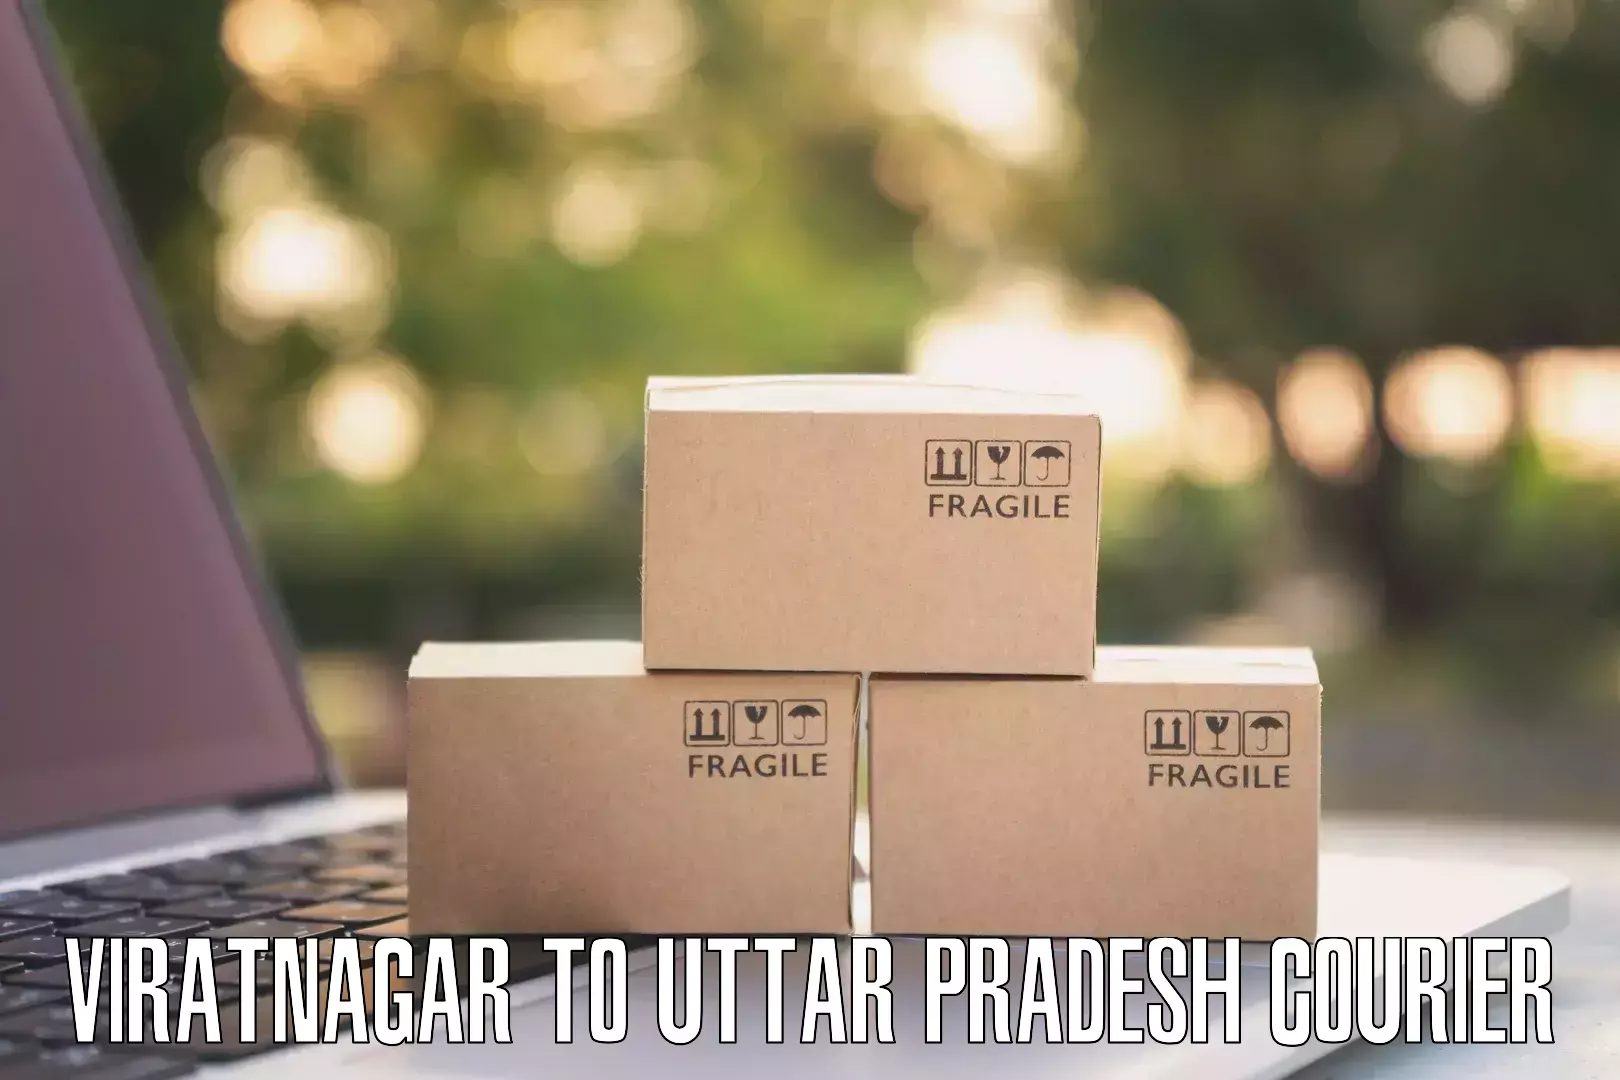 Shipping and handling Viratnagar to Anandnagar